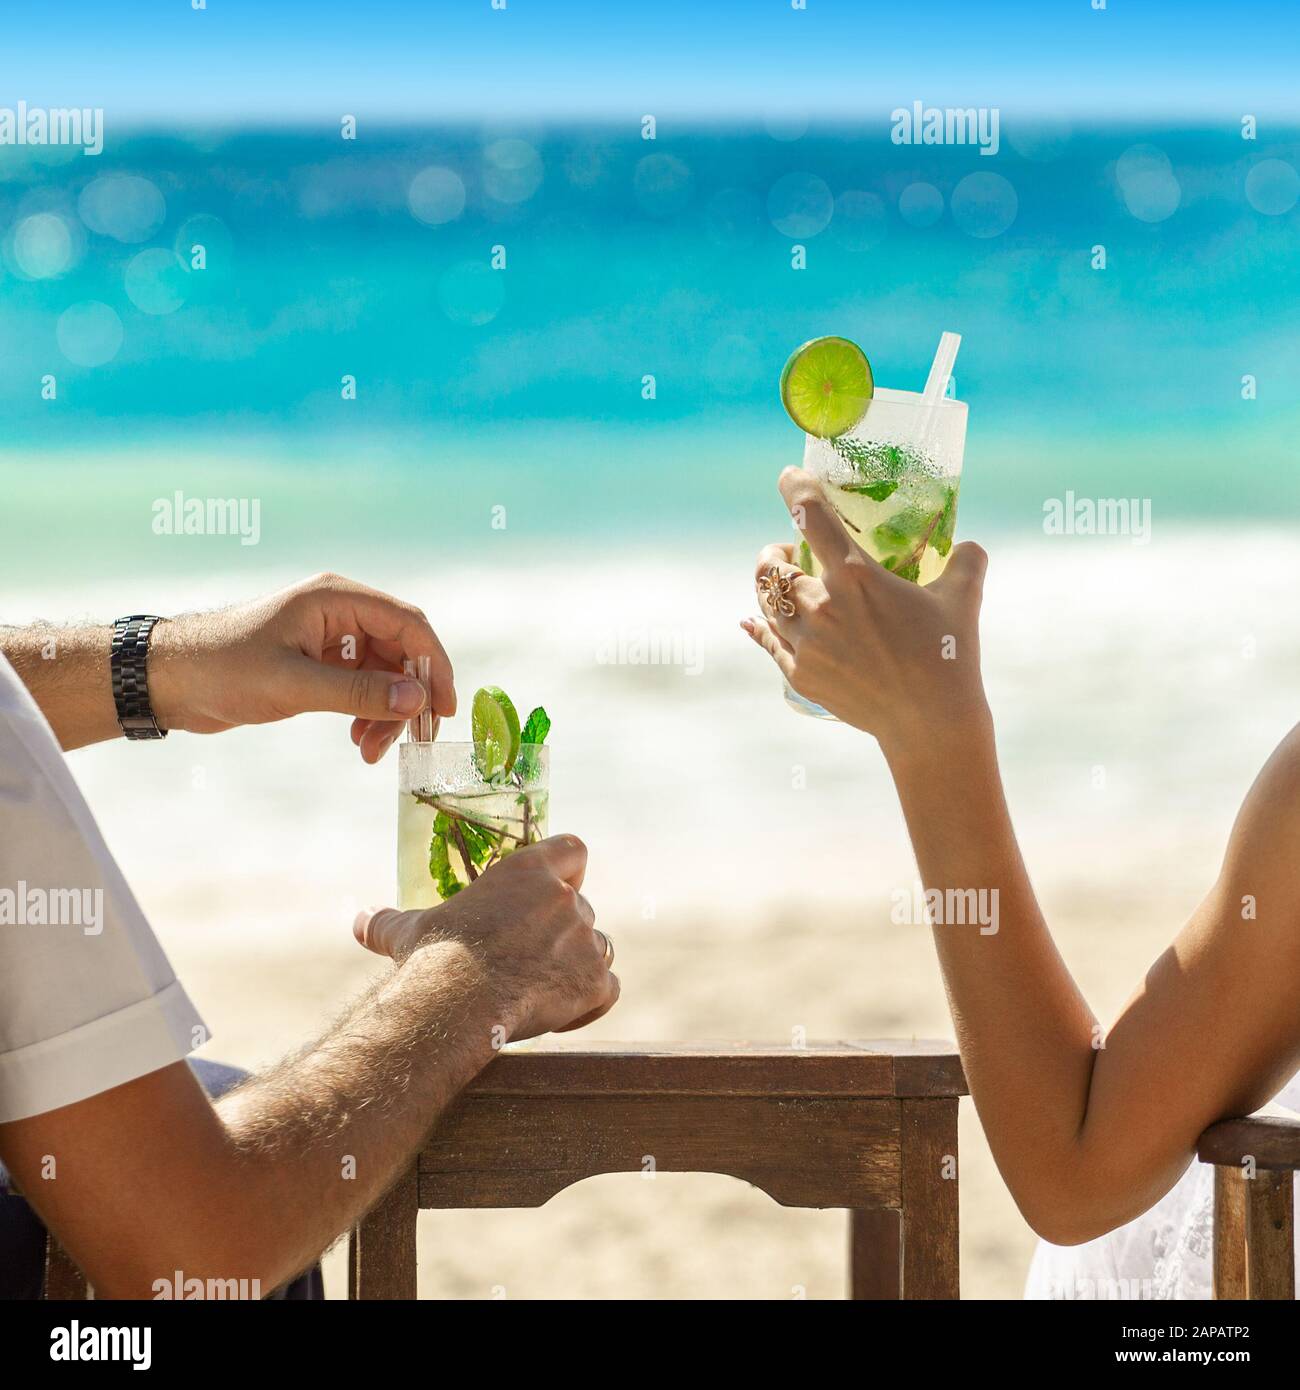 Deux verres à cocktail dans les mains sur fond marin. Concept de vacances d'été. Super mojito sur la plage. Reposez-vous sur les vacances à la ceinture. Carré Instagram Banque D'Images